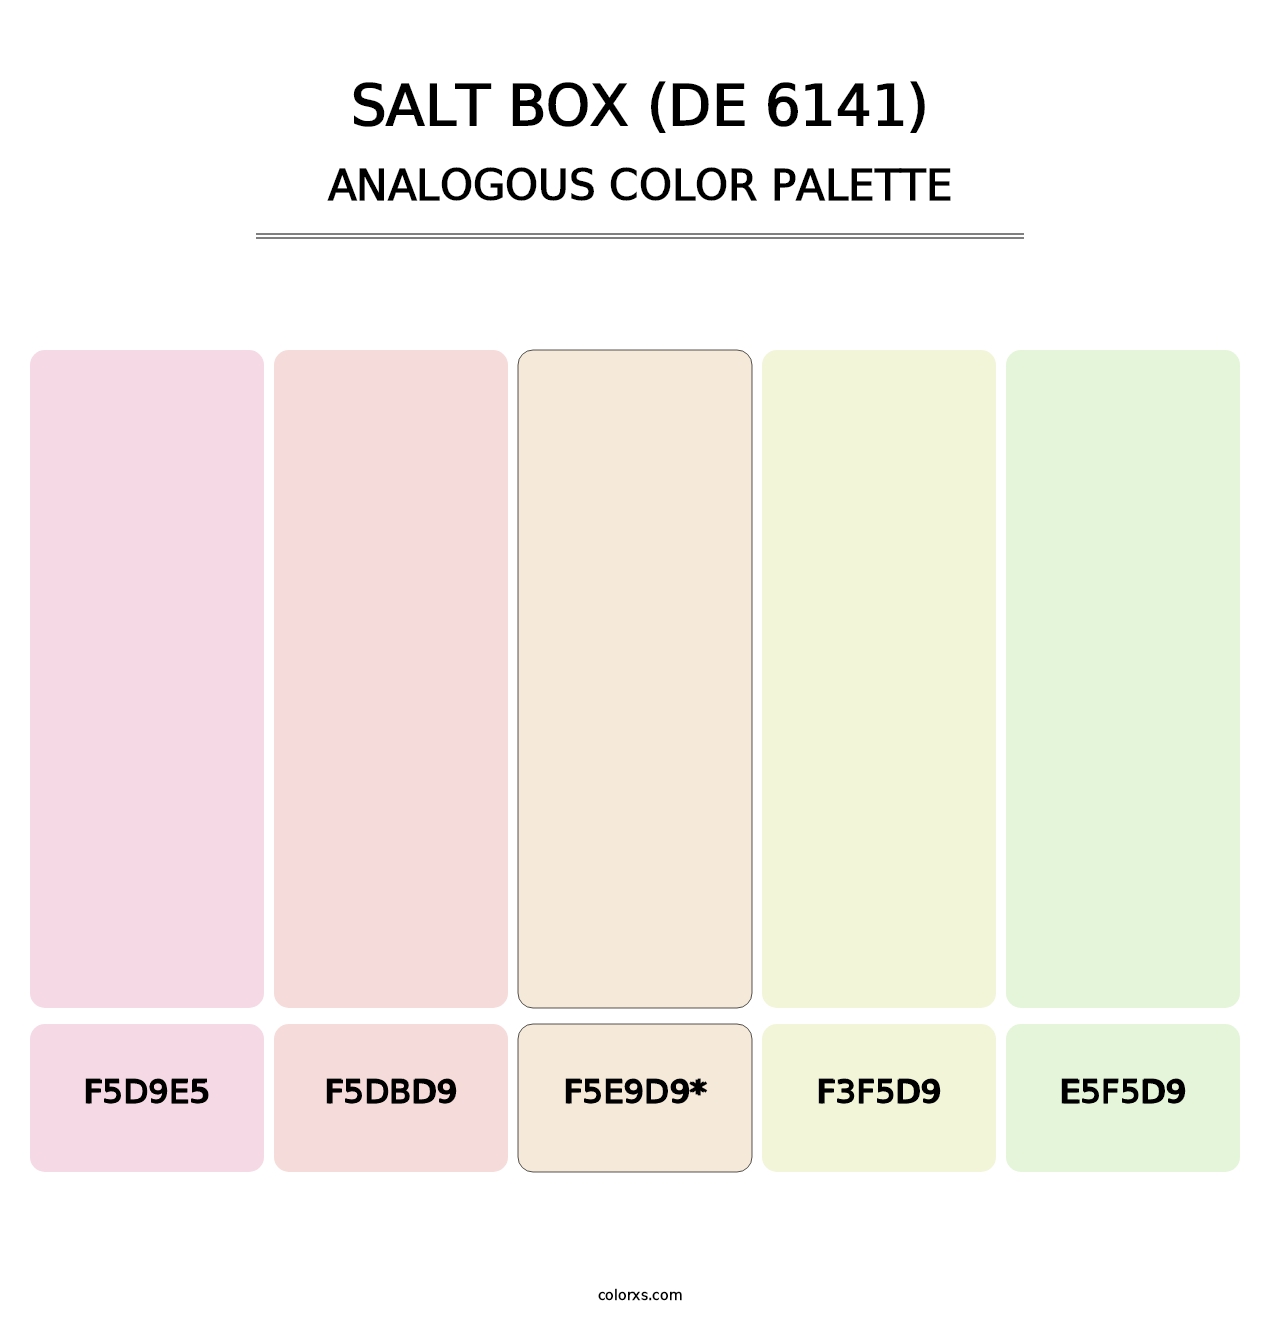 Salt Box (DE 6141) - Analogous Color Palette